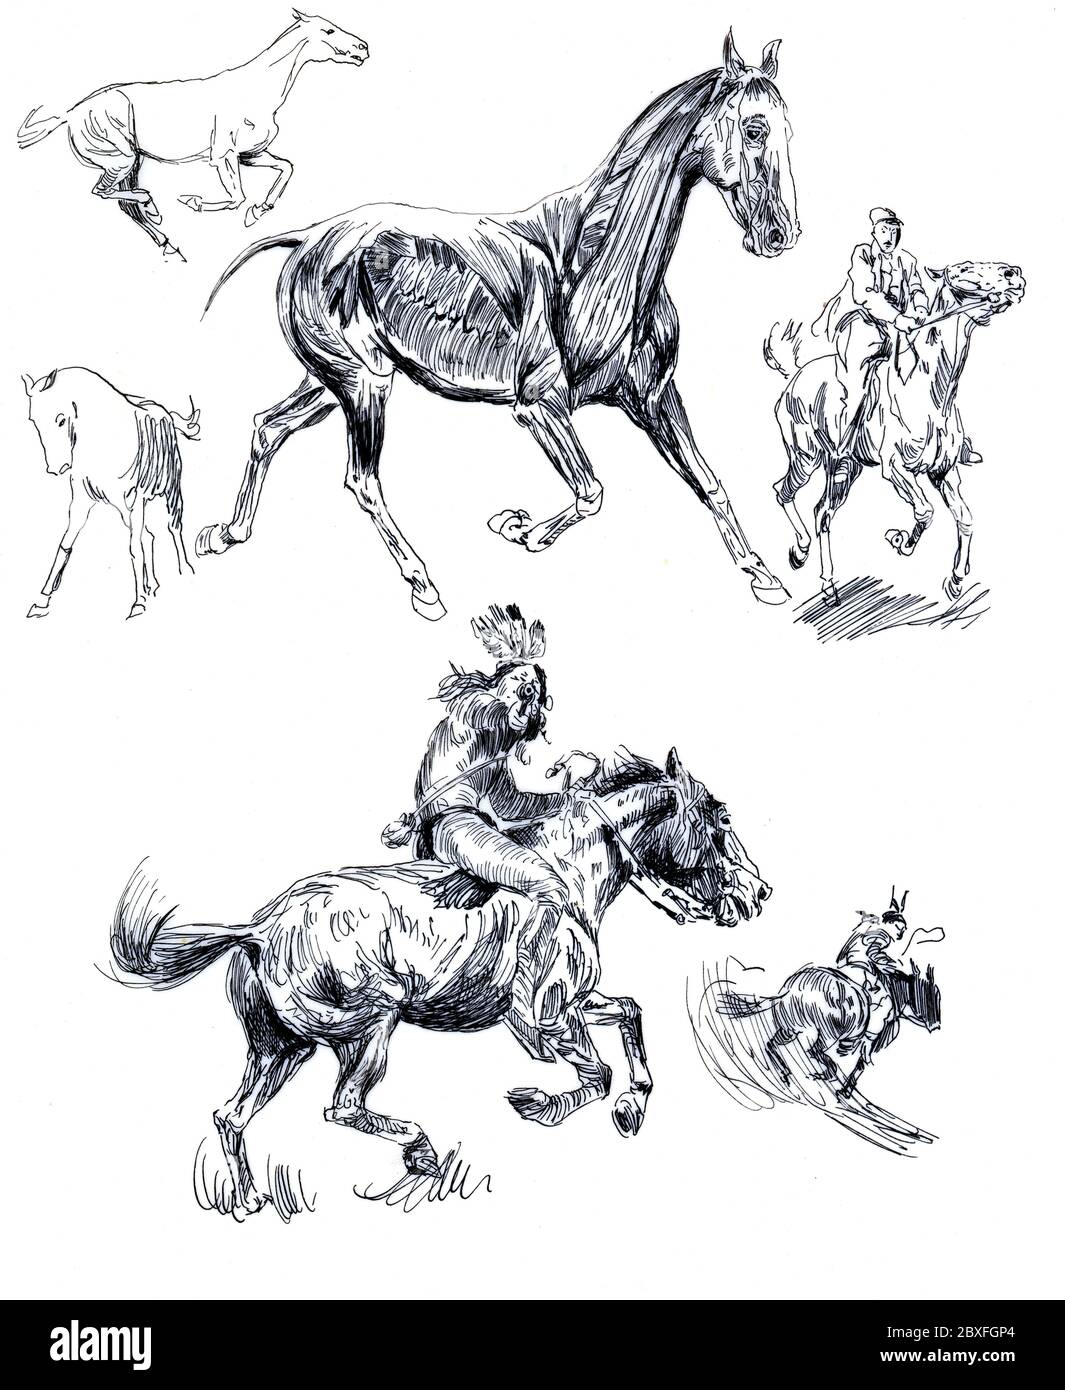 Una selezione di opere d'arte equestre/equestri di artisti sconosciuti degli anni '50. Foto Stock